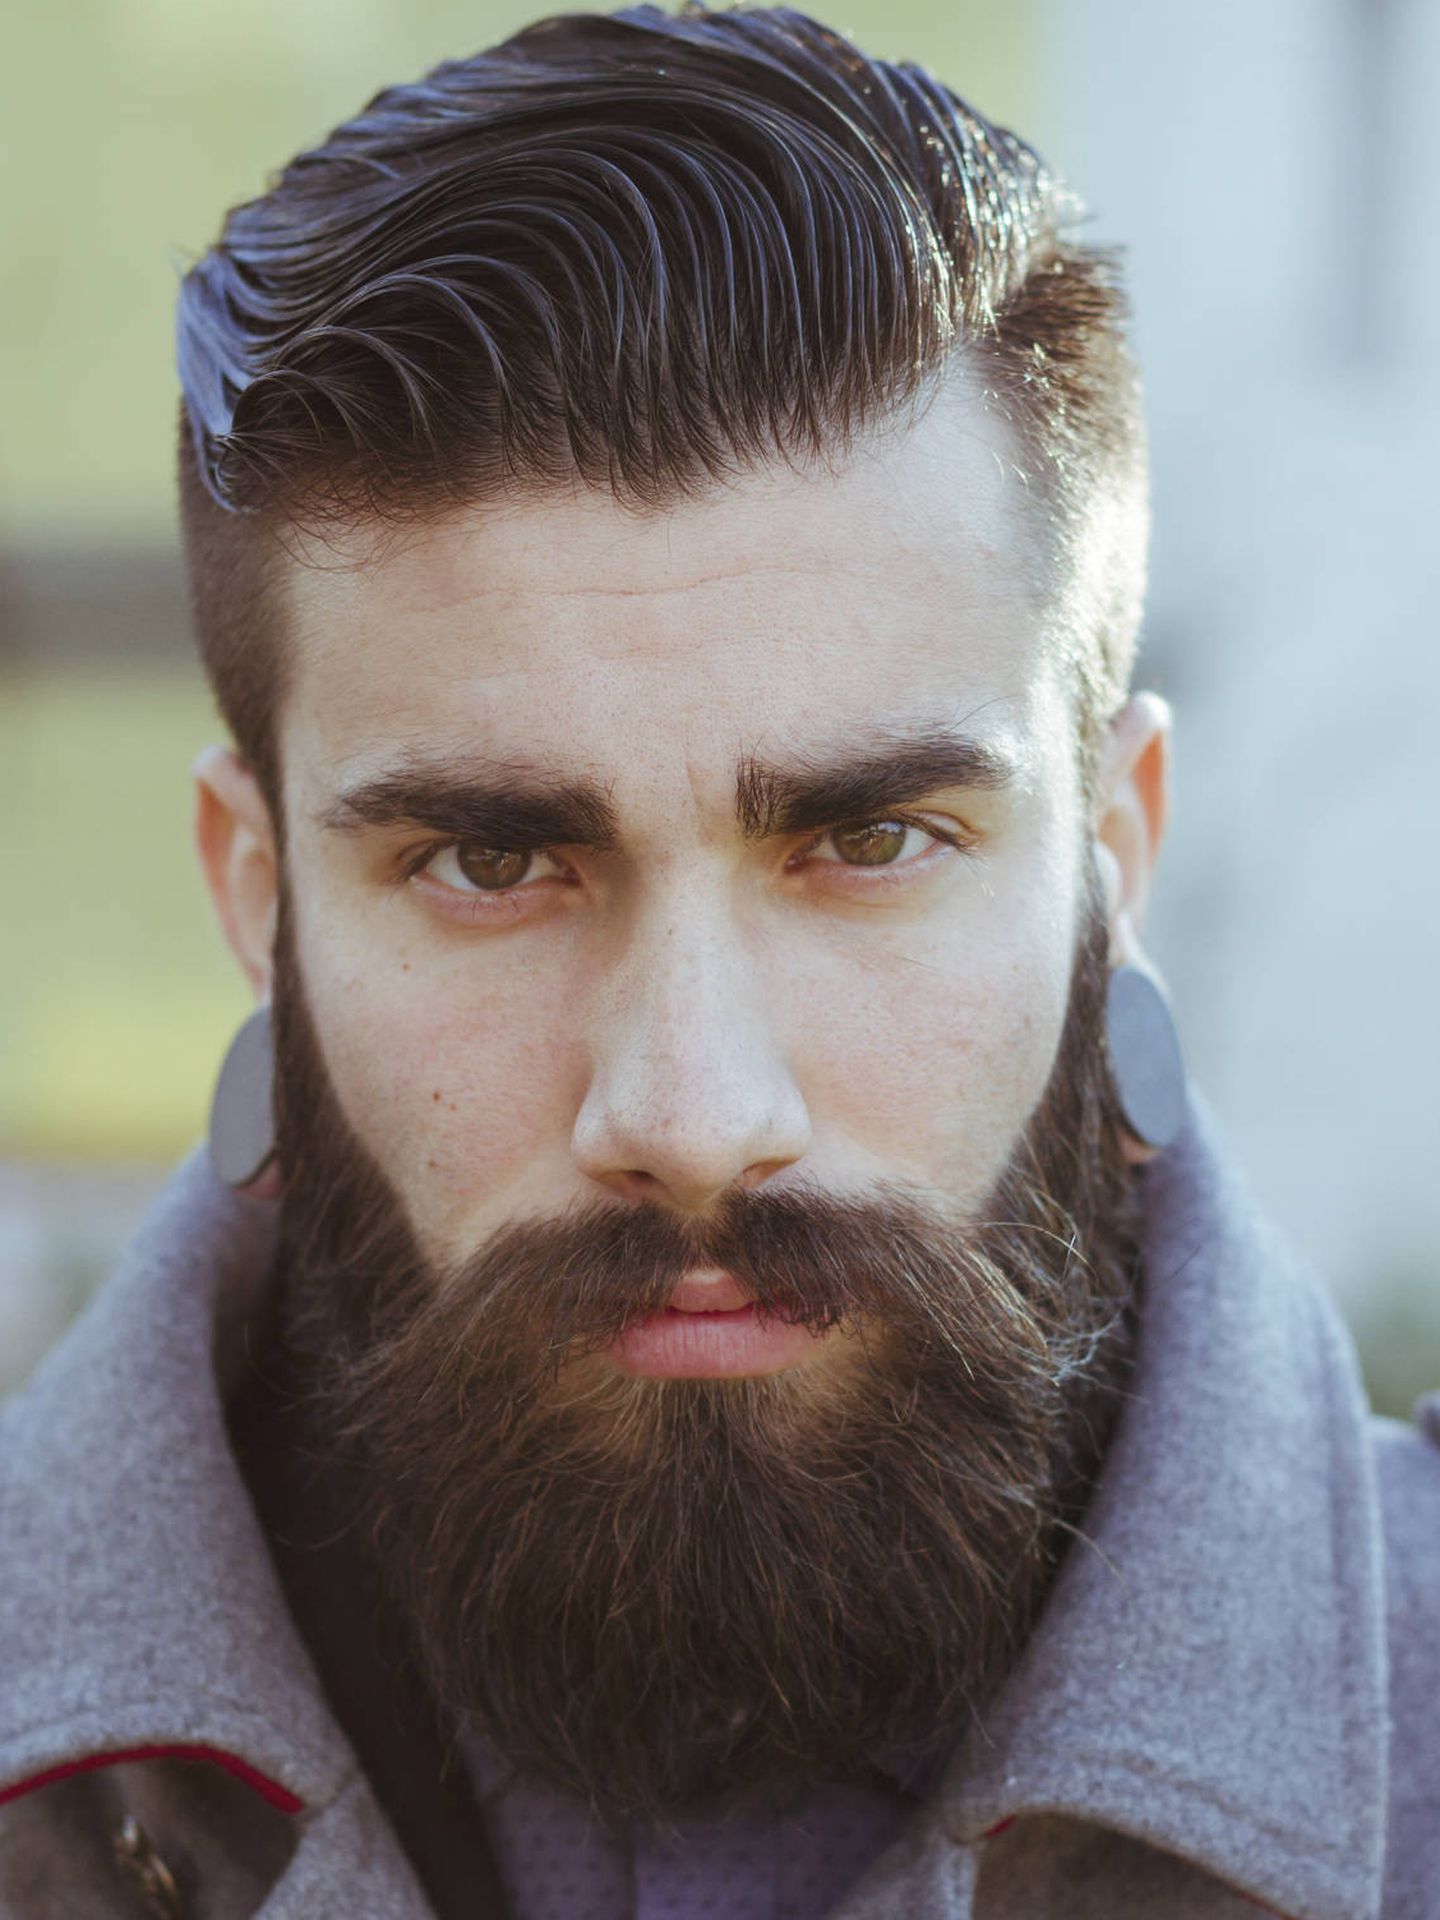 Una barba frondosa es símbolo de masculinidad. (iStock)